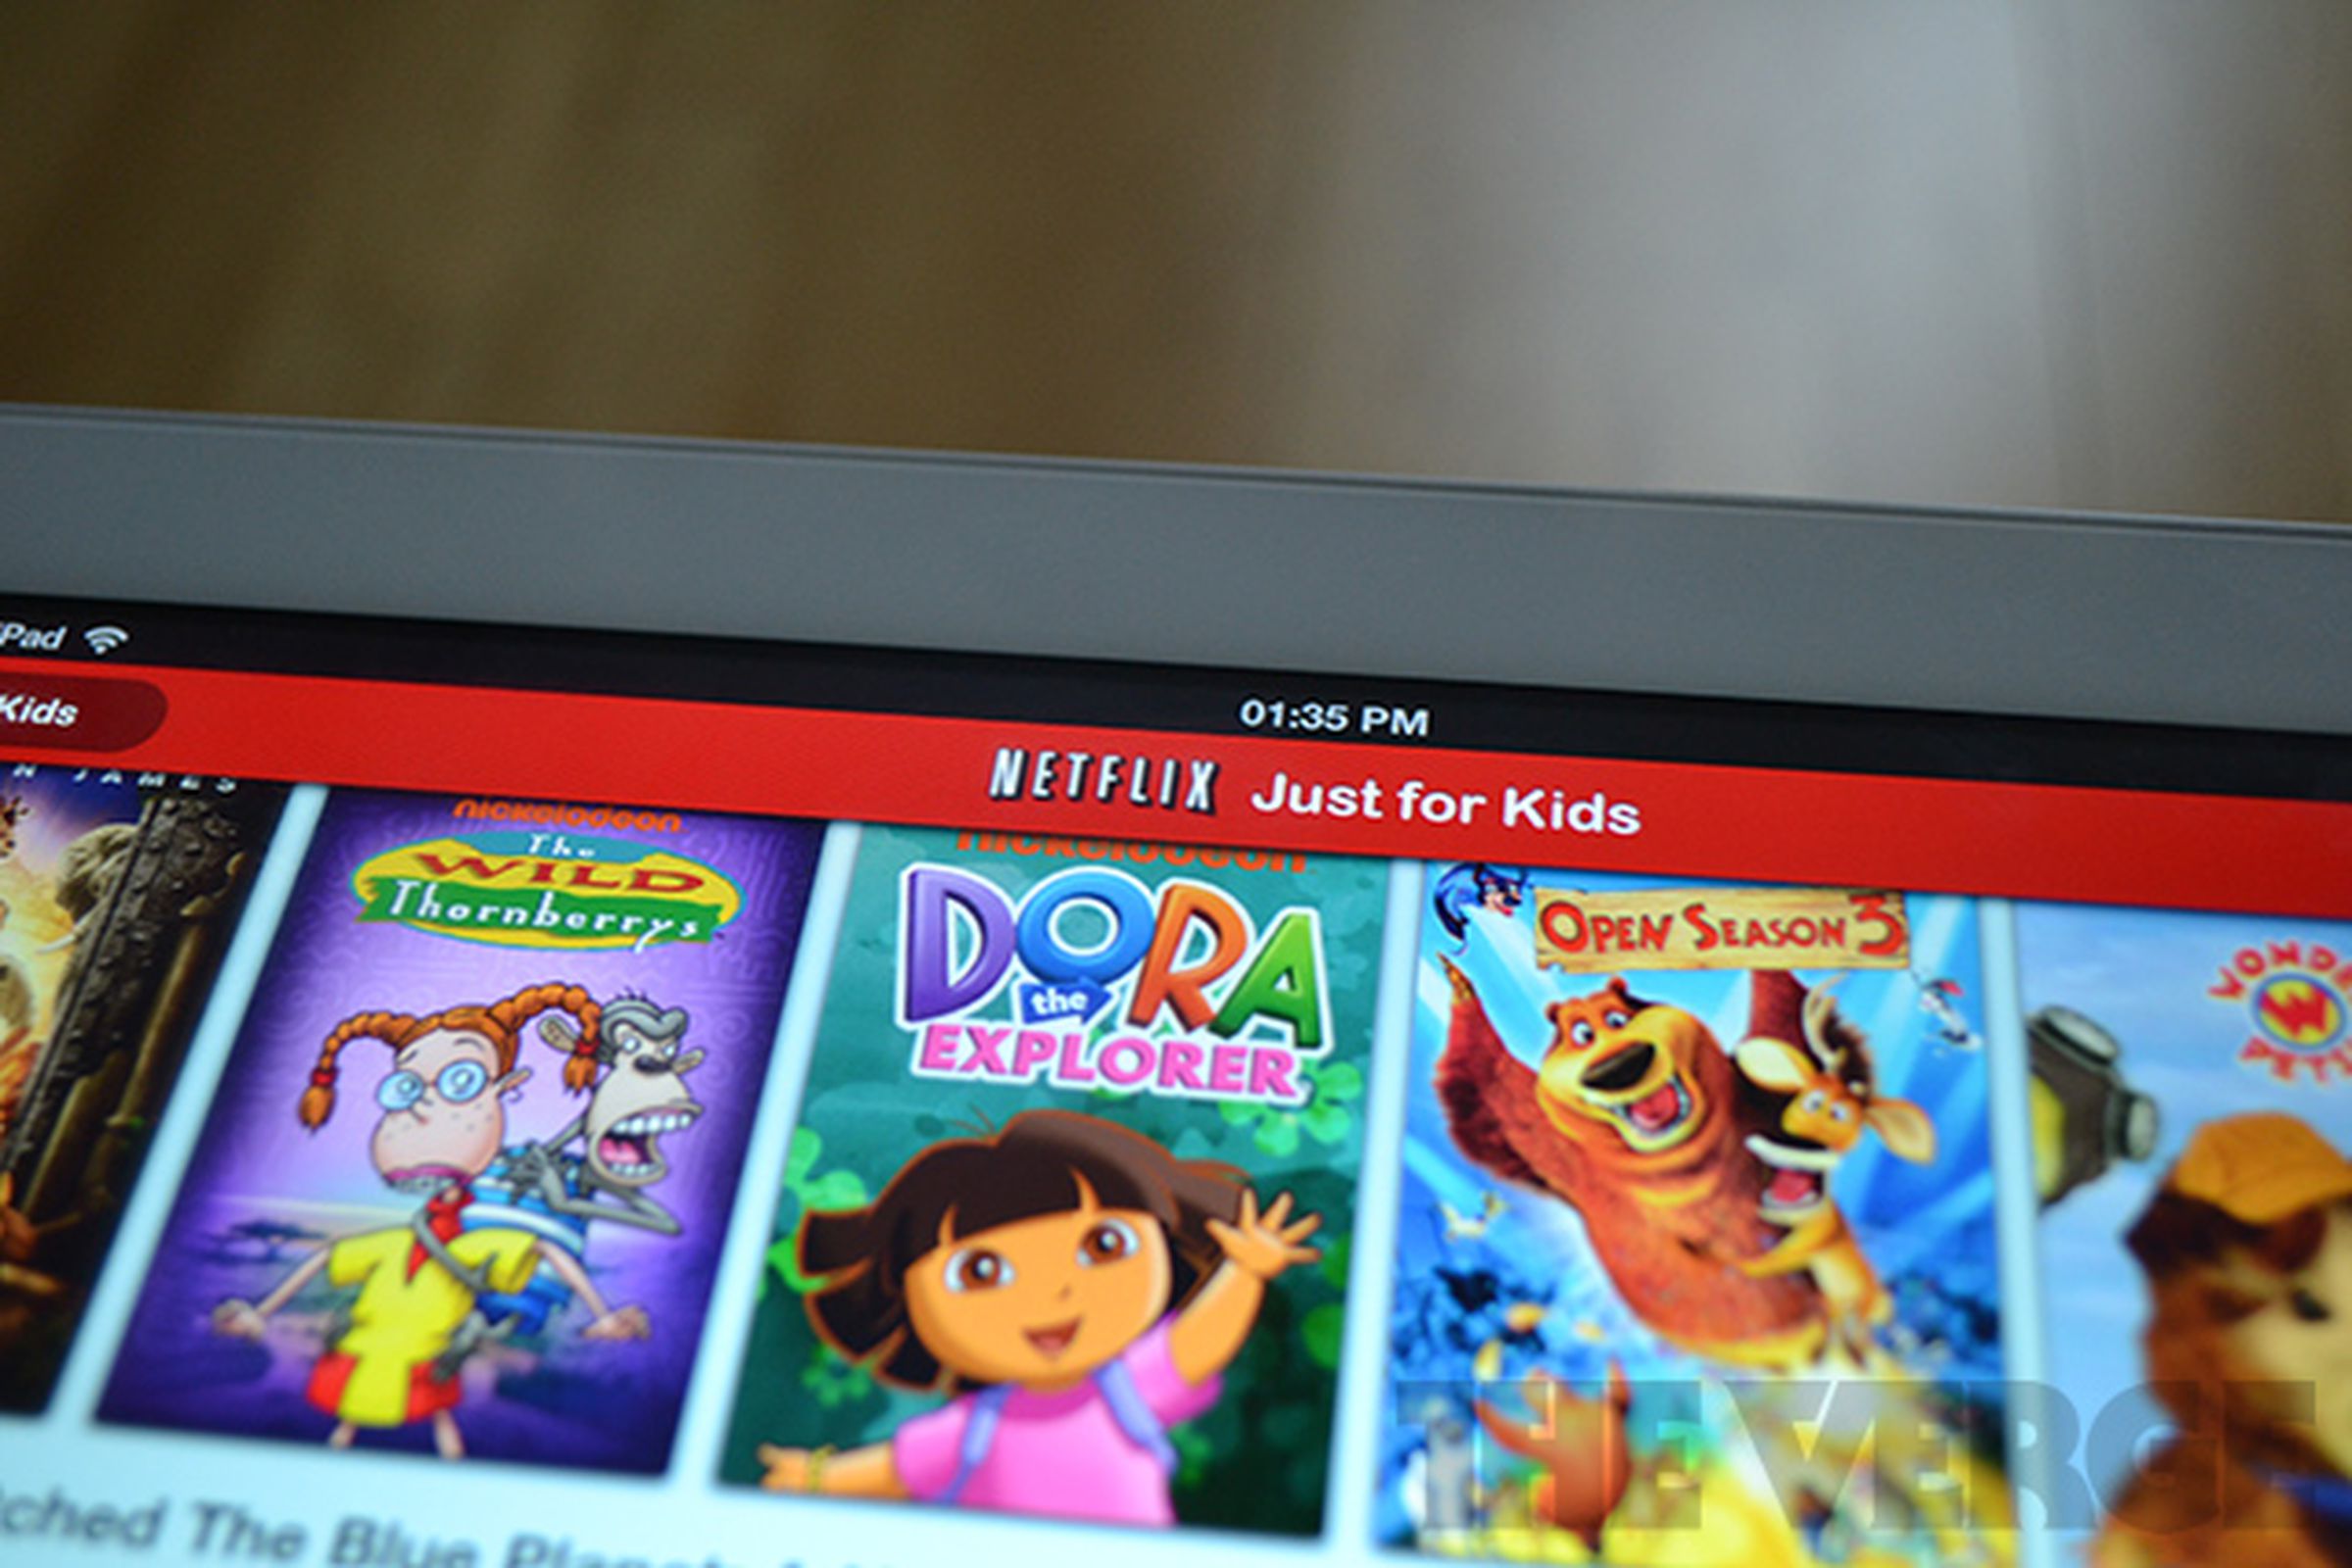 Netflix just for kids mode